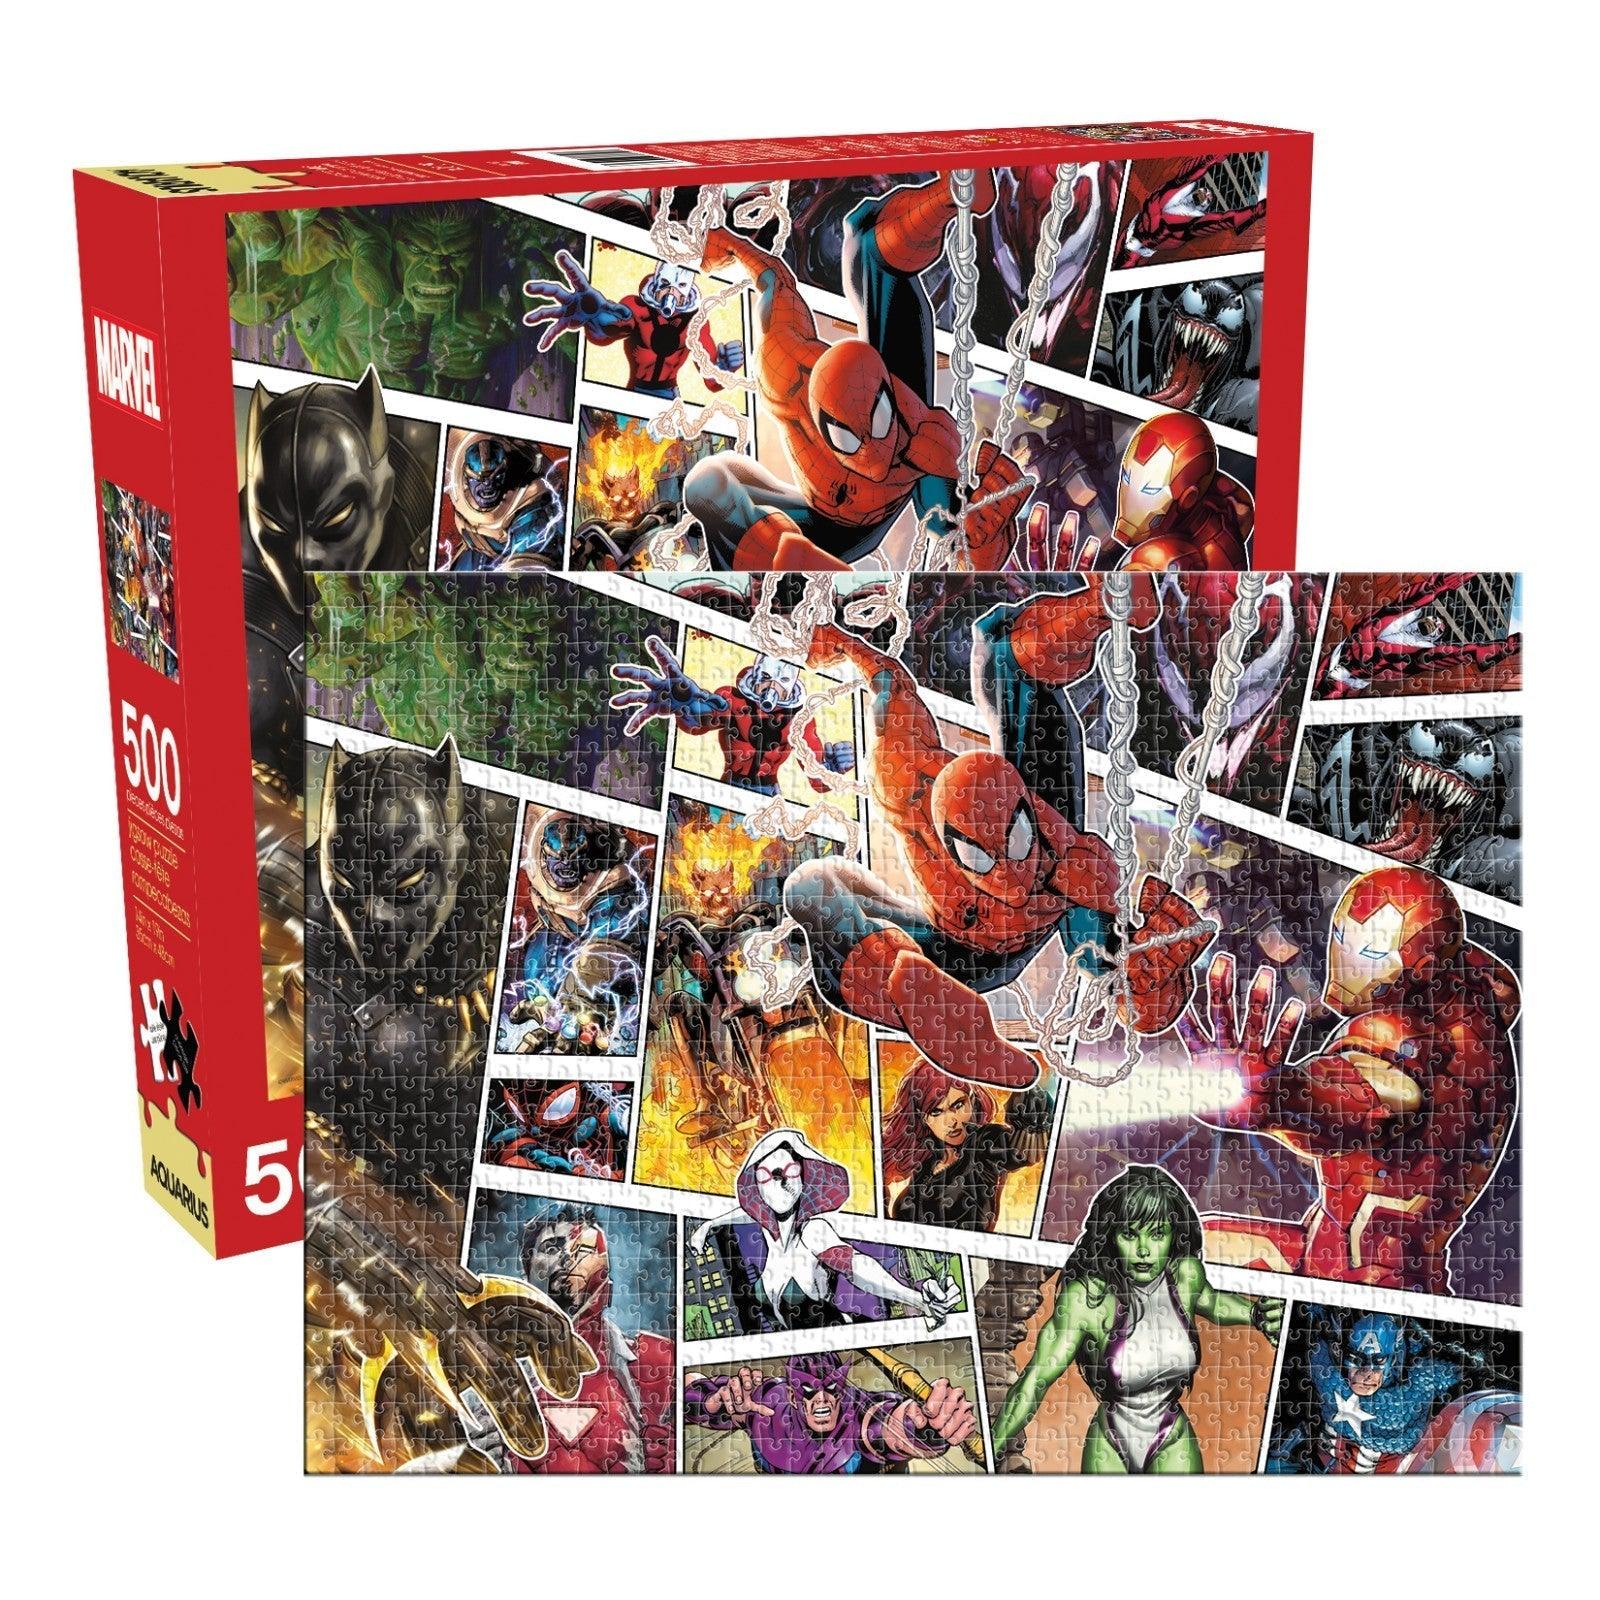 VR-84708 Aquarius Puzzle Marvel Panels Puzzle 500 pieces - Aquarius - Titan Pop Culture